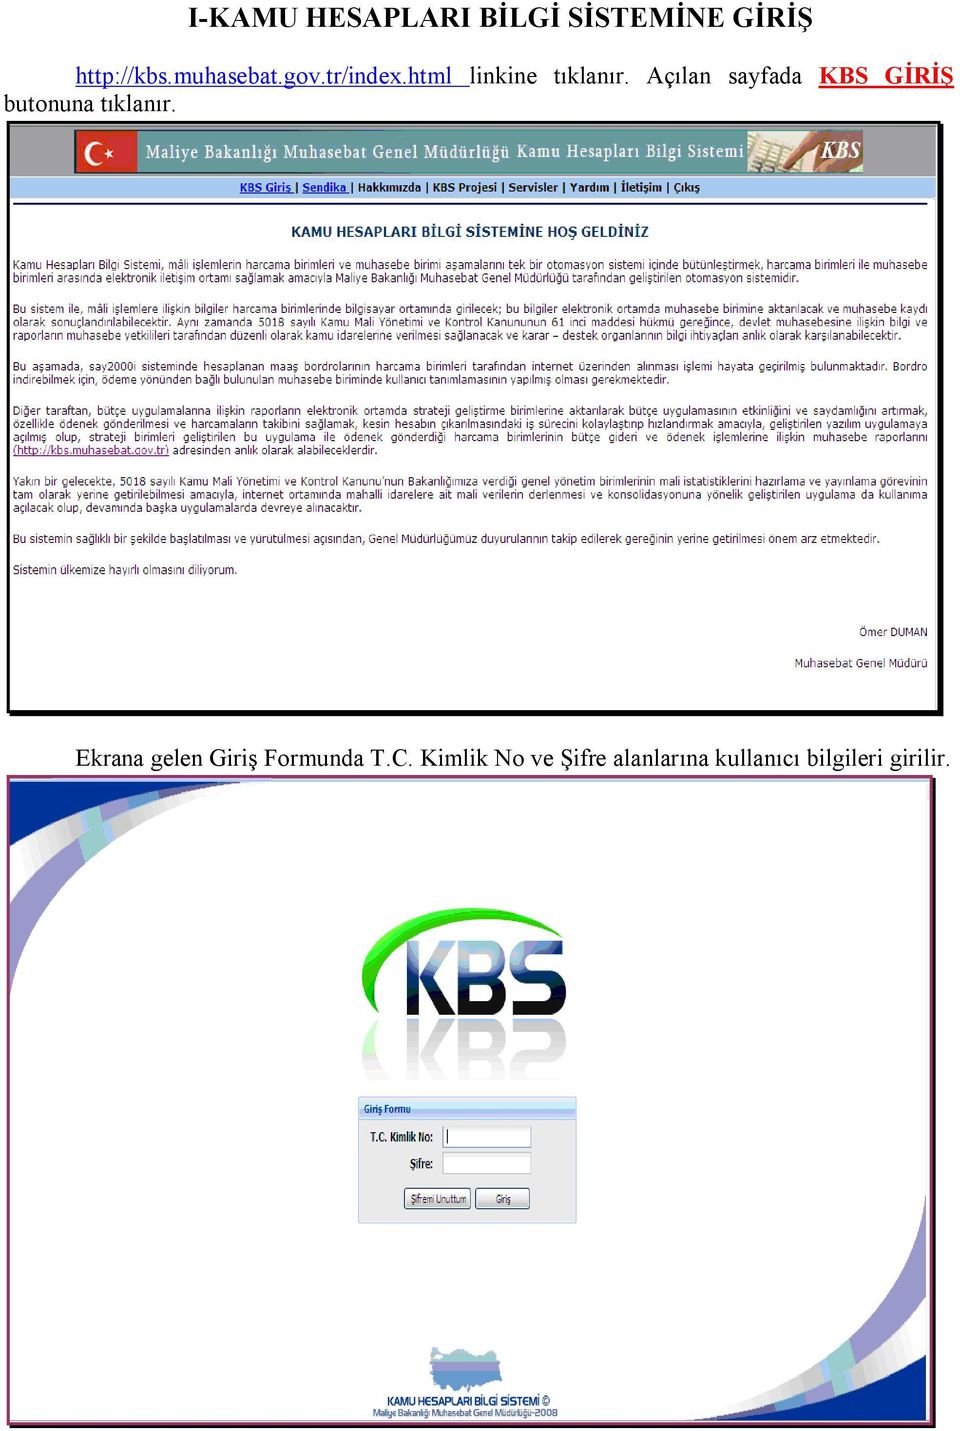 Açılan sayfada KBS GİRİŞ butonuna tıklanır.